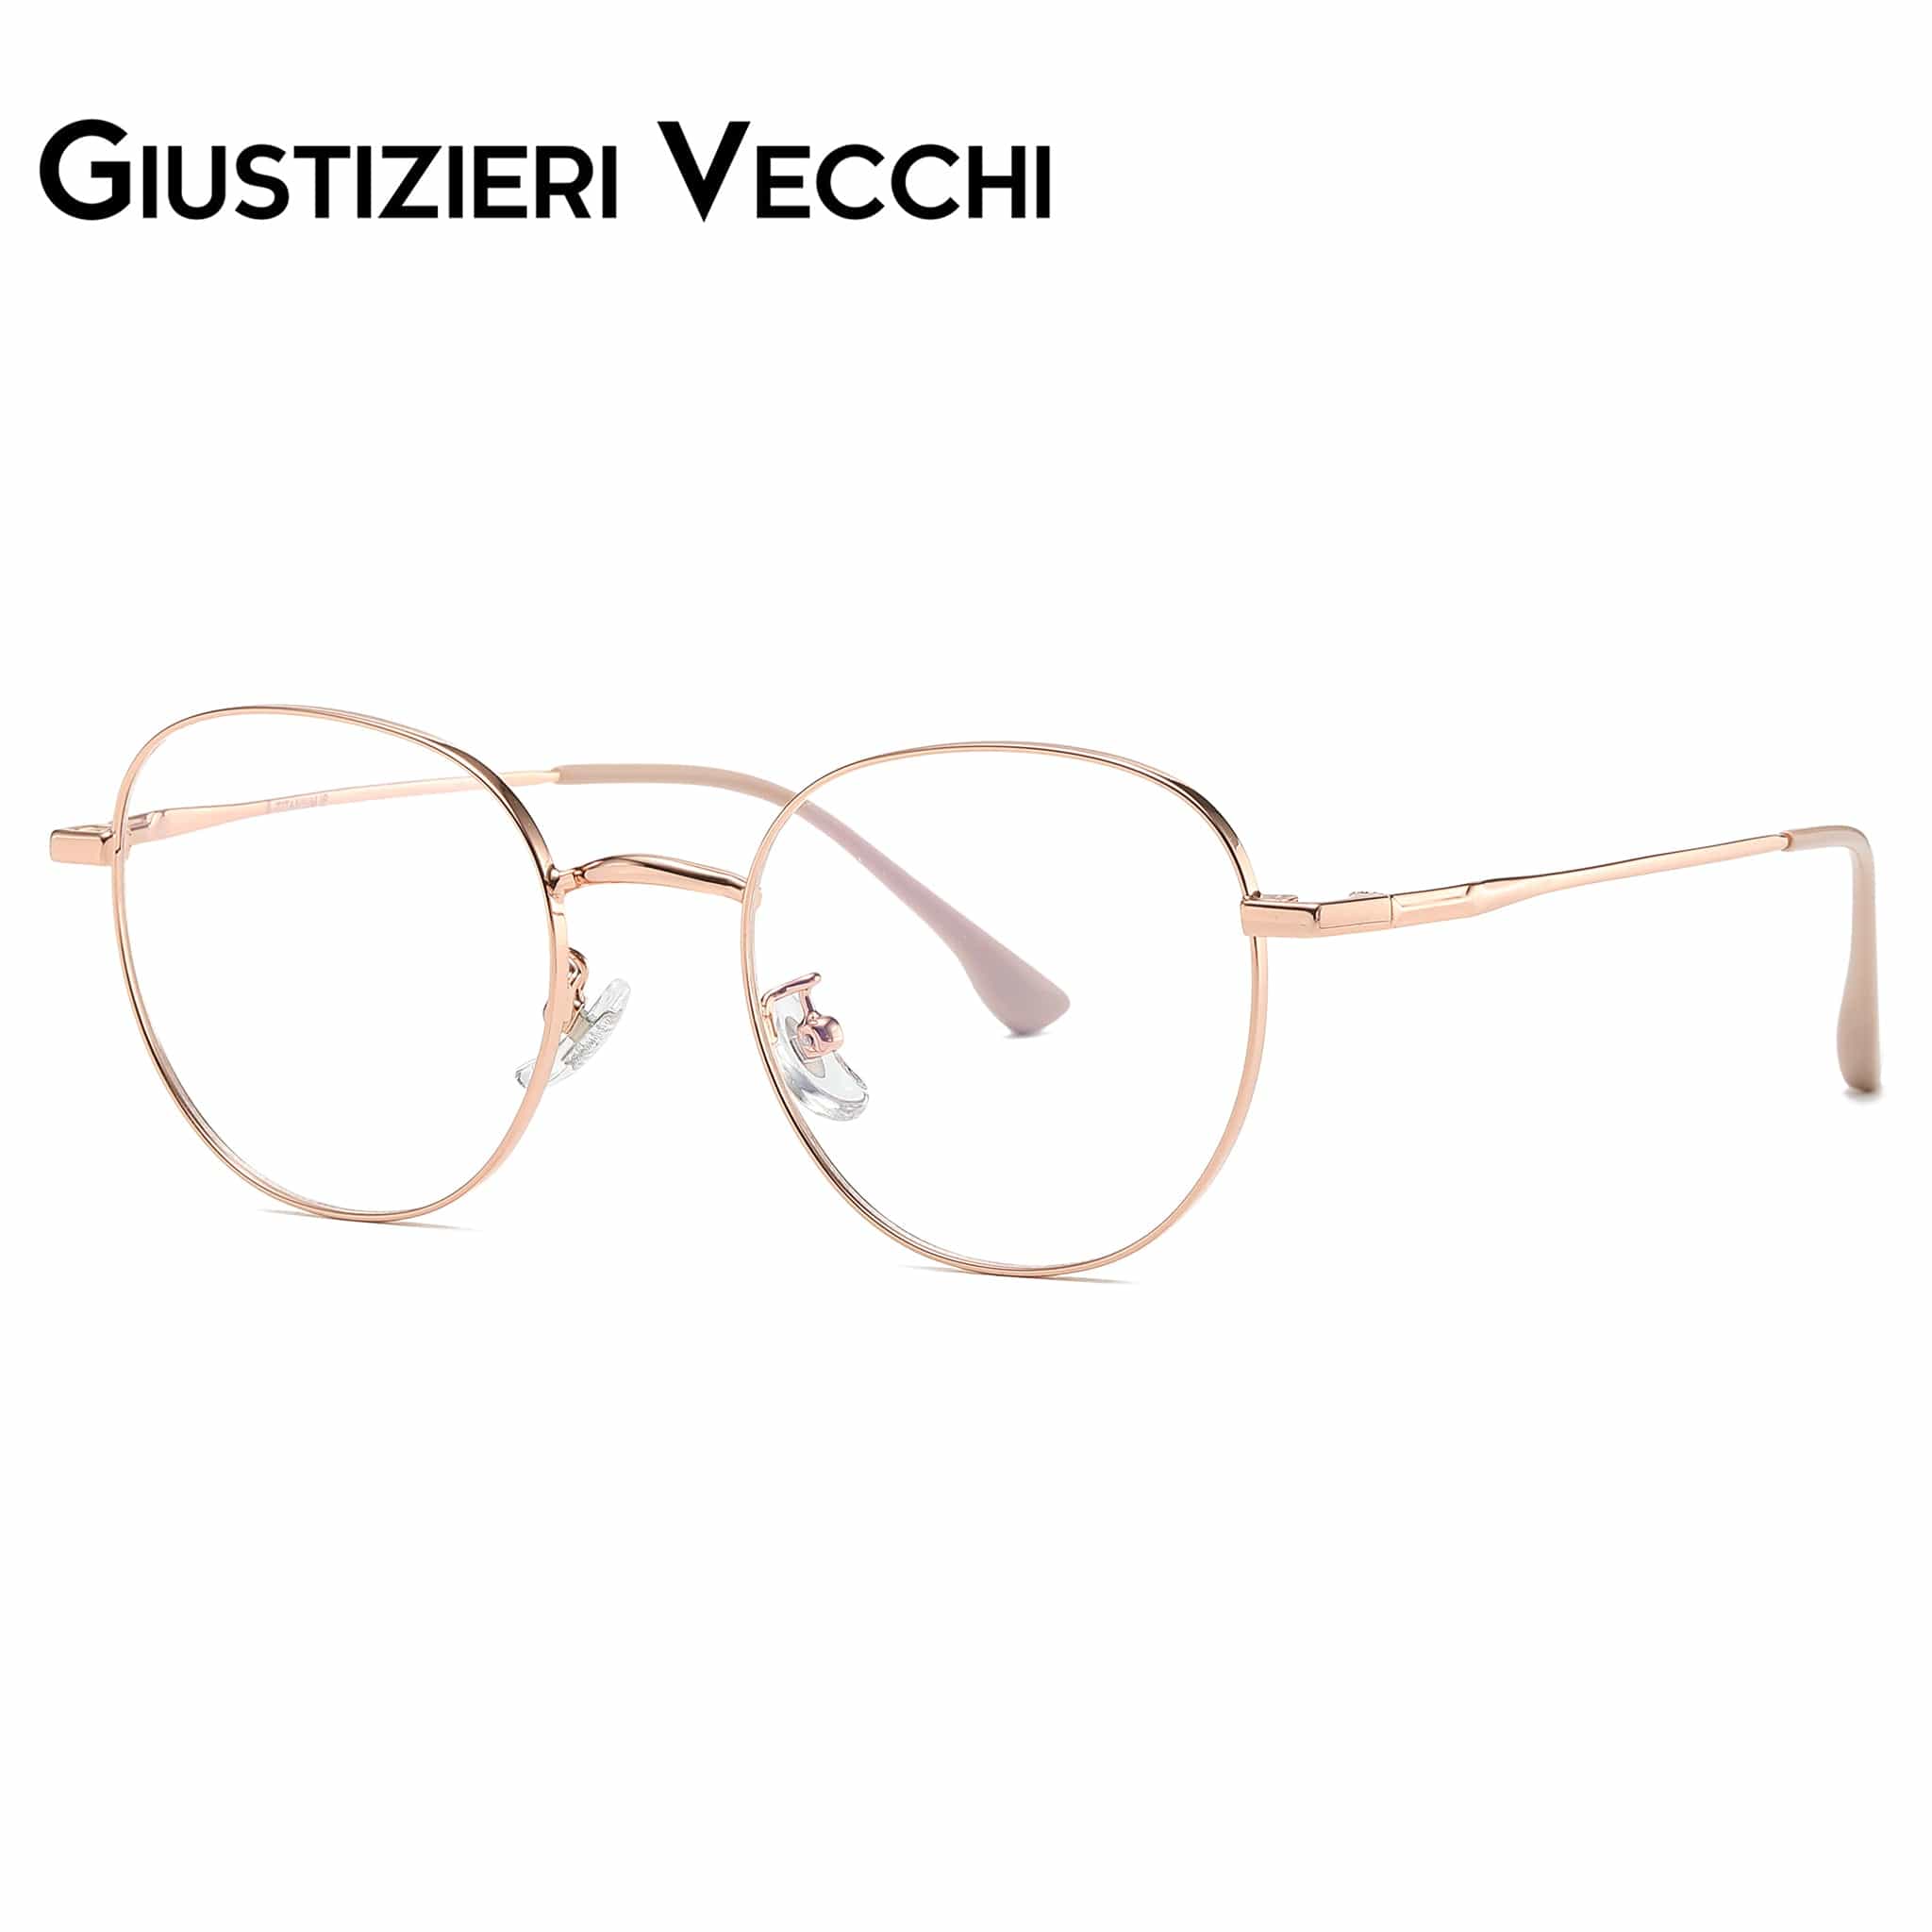 GIUSTIZIERI VECCHI Eyeglasses Small / Rose Gold Arctic Chill Duo